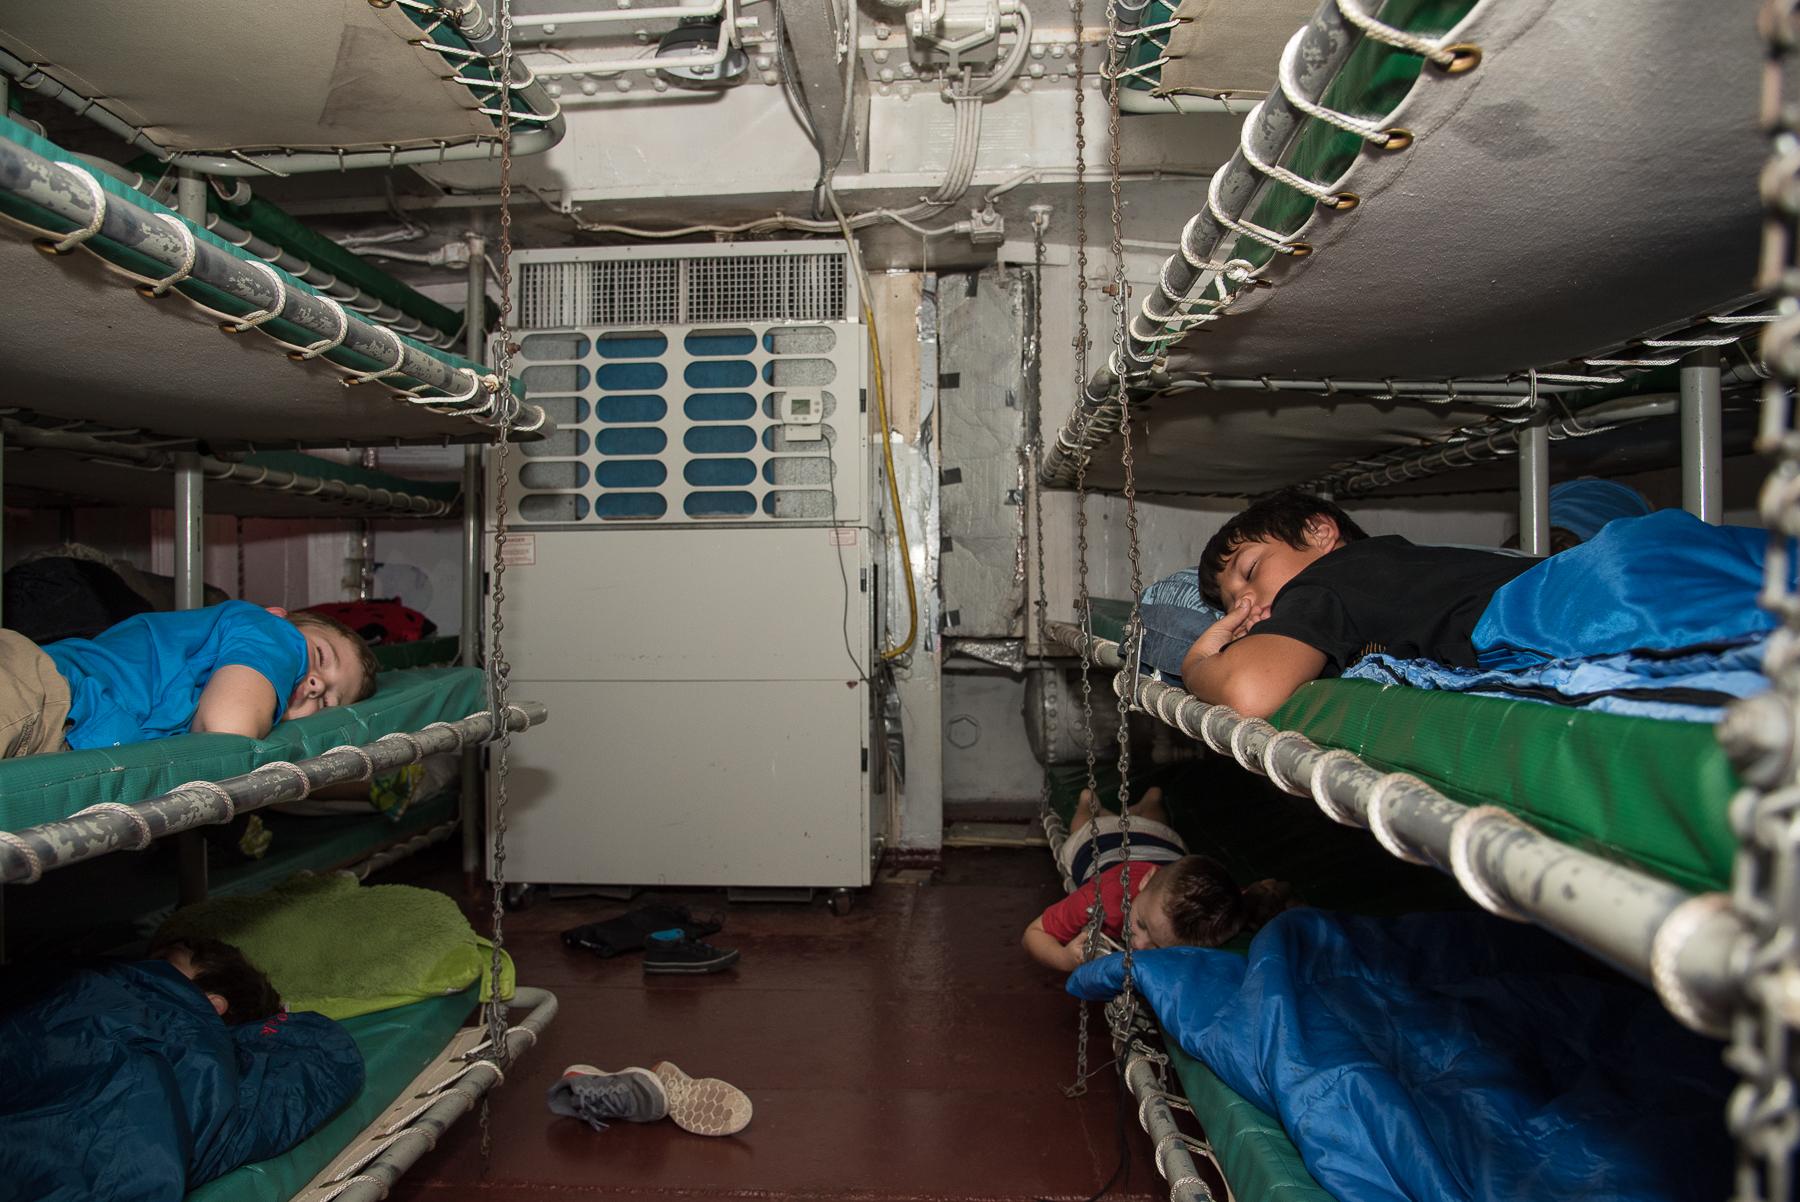 战列舰船员这么多,船员睡觉的环境怎么样? 